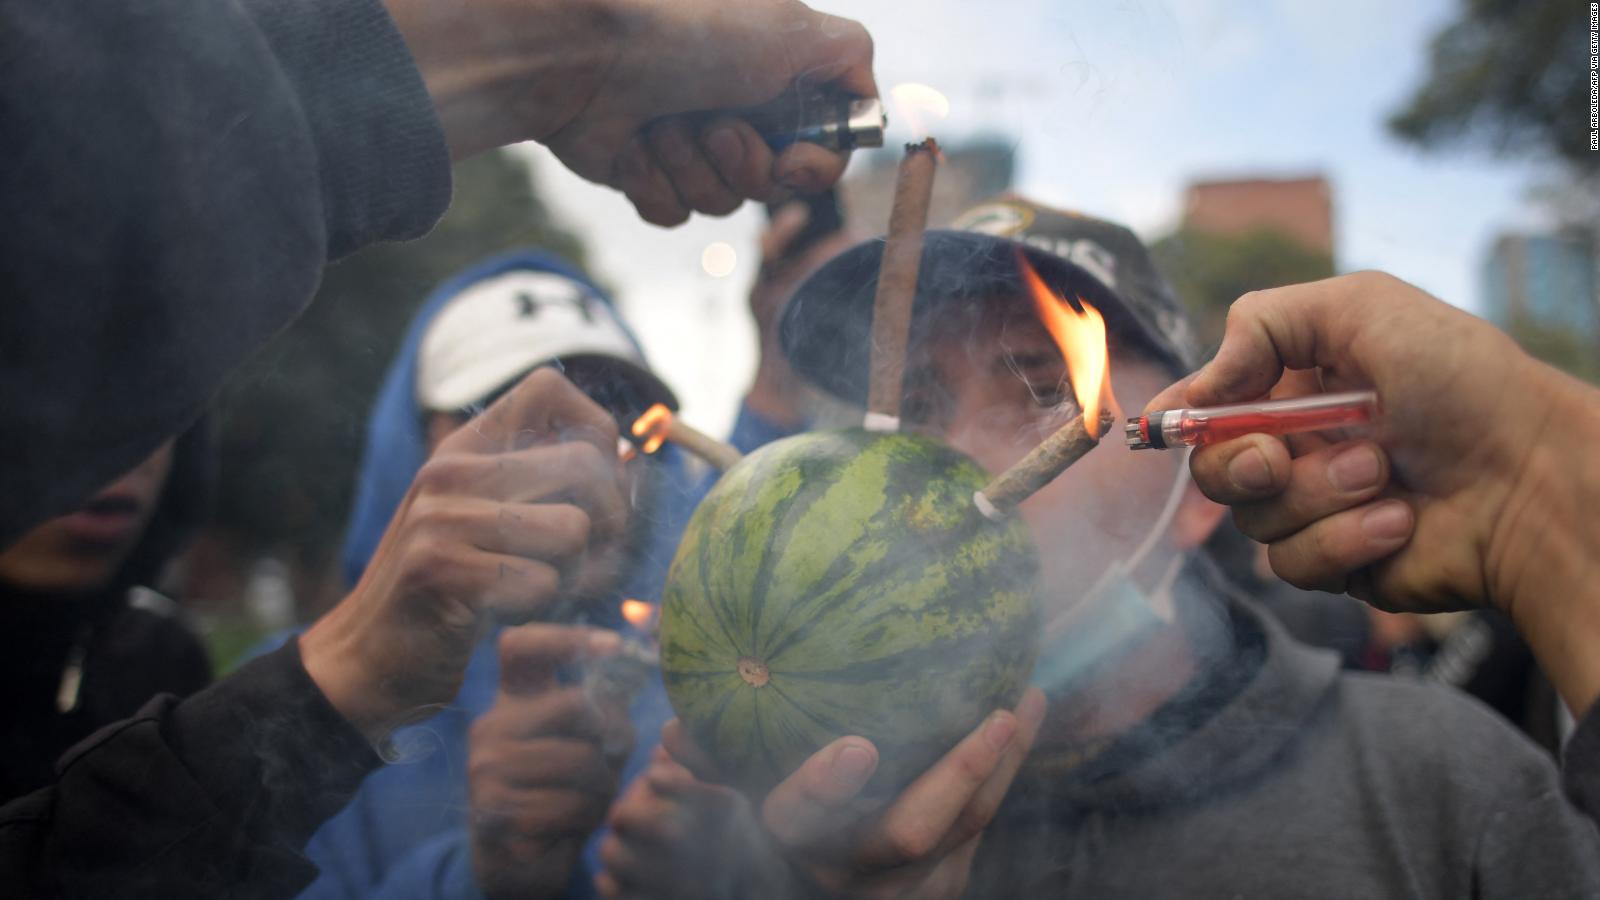 220821113930 02 colombia marijuana full 169 - Colombia vislumbra caminos para acabar la guerra contra las drogas: ¿legalización de la marihuana y la cocaína?